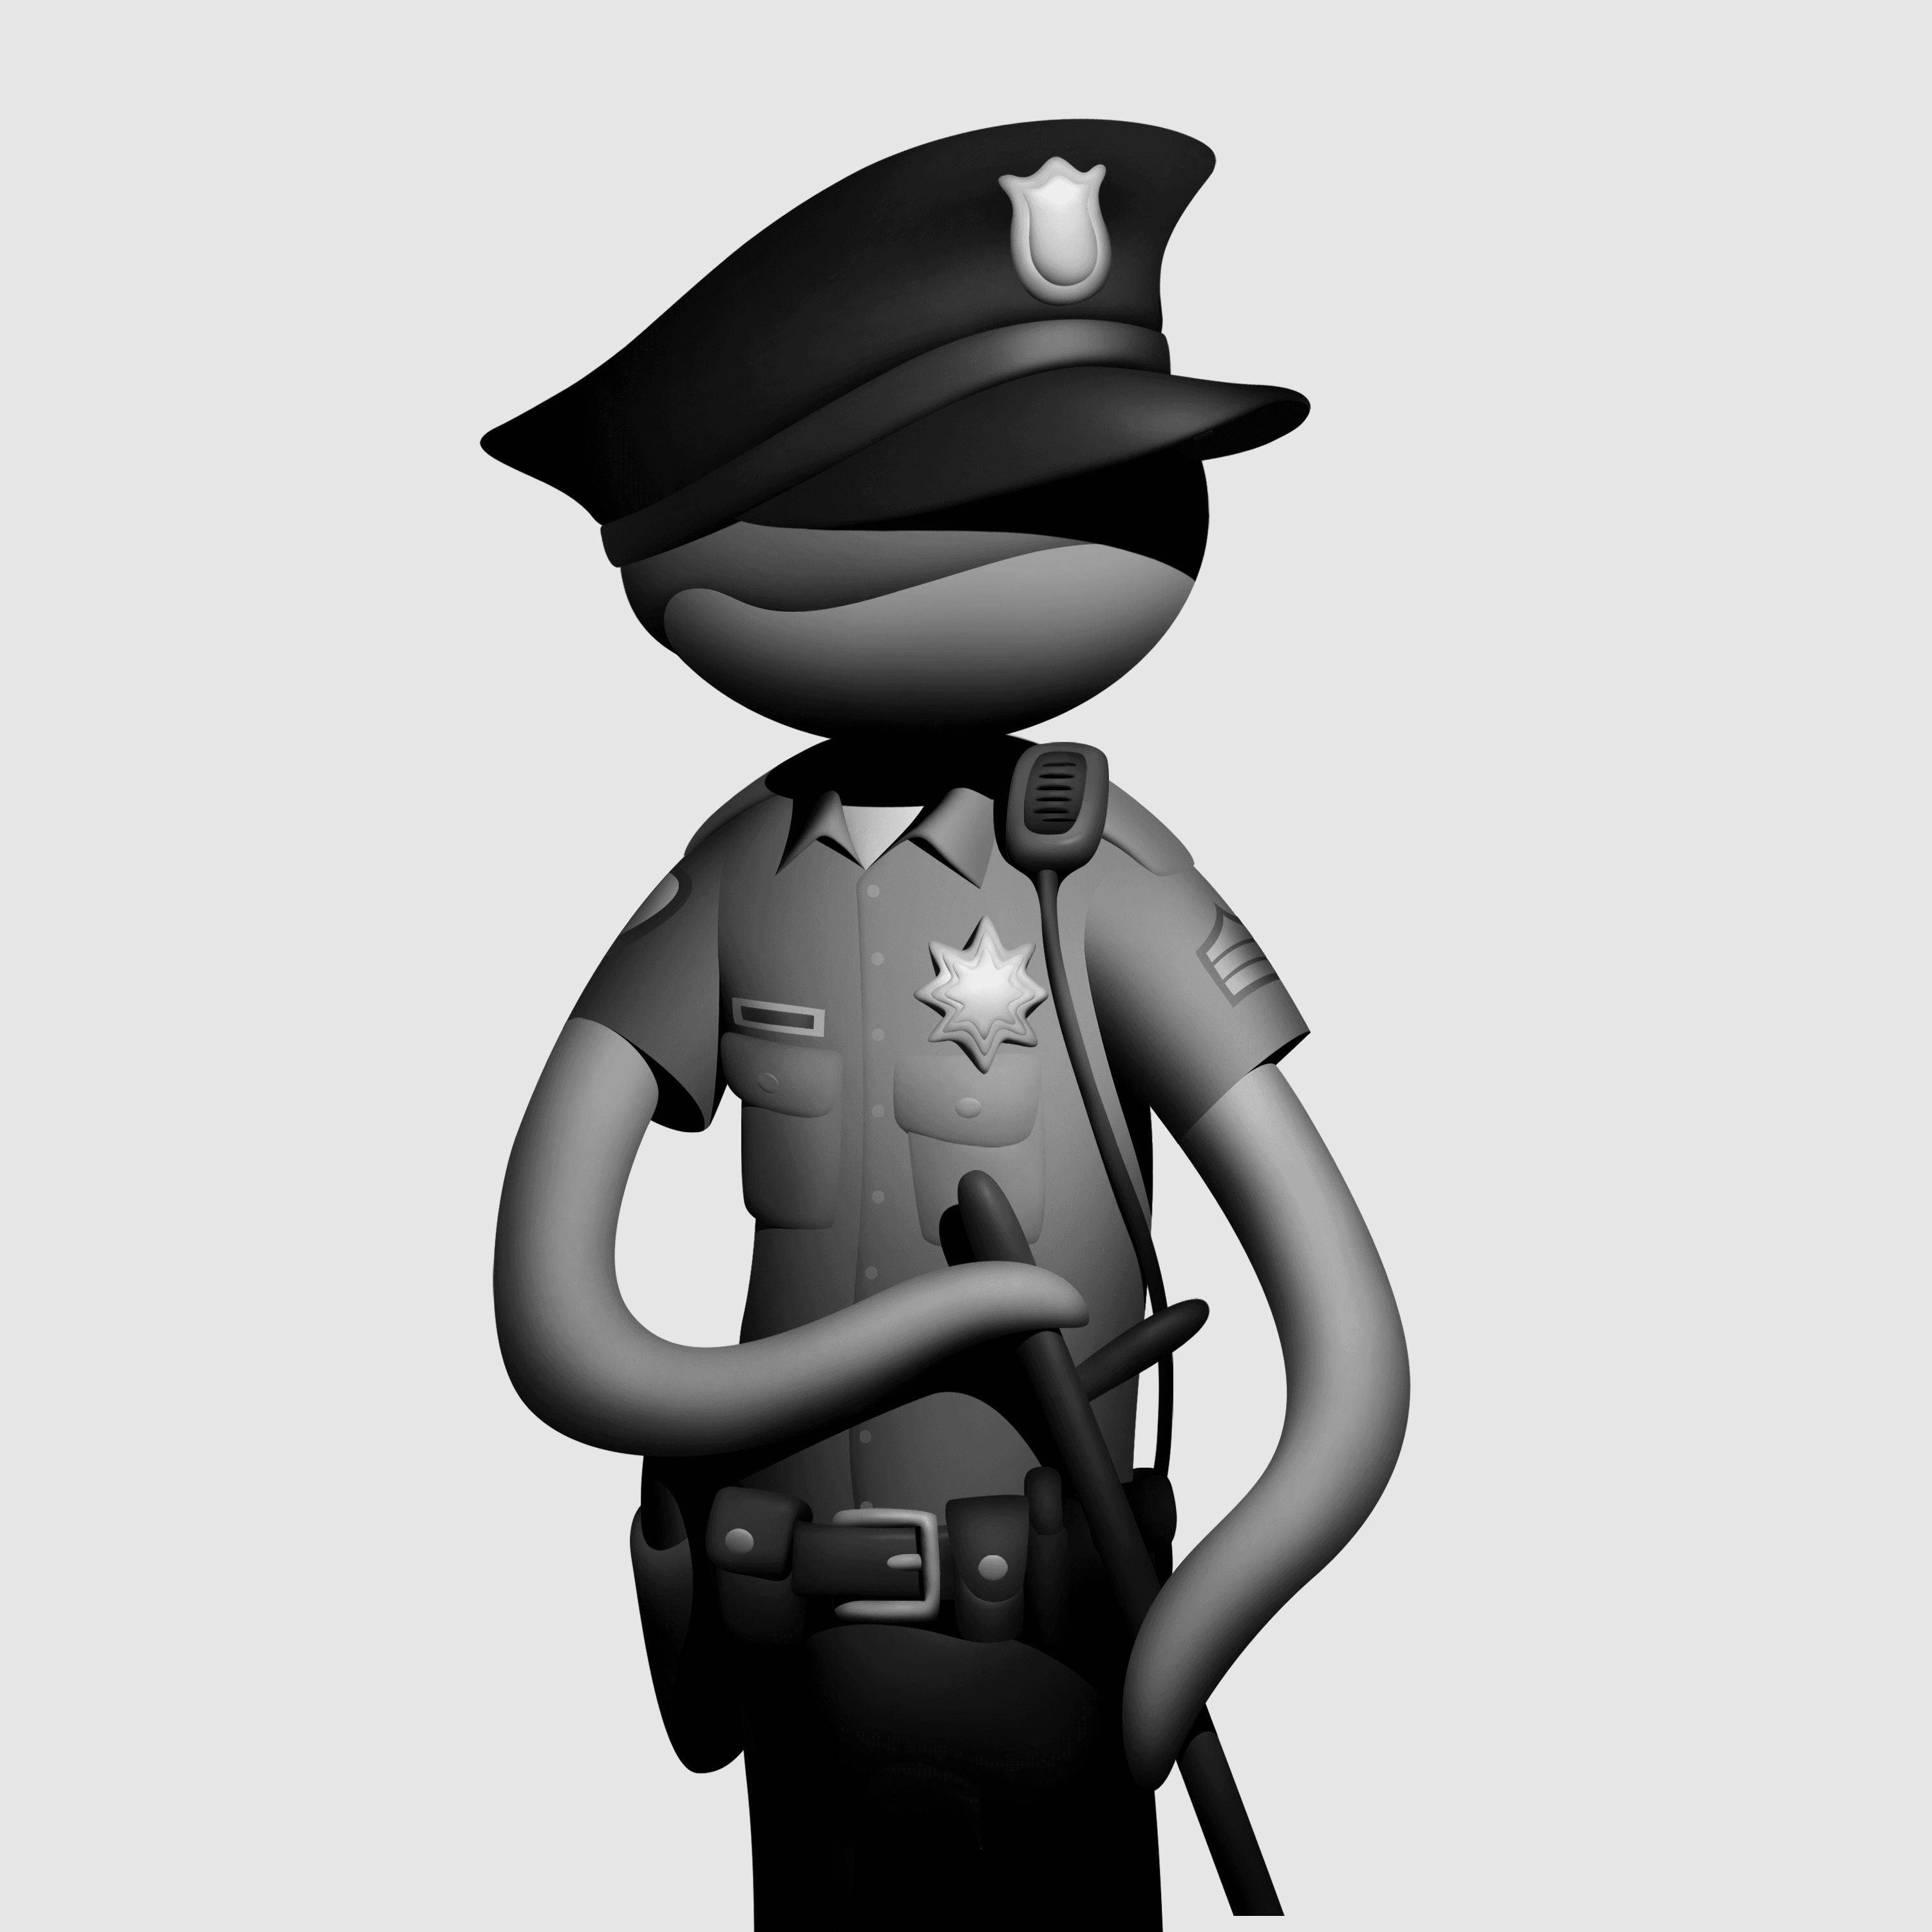 Citizen 004 - Cop